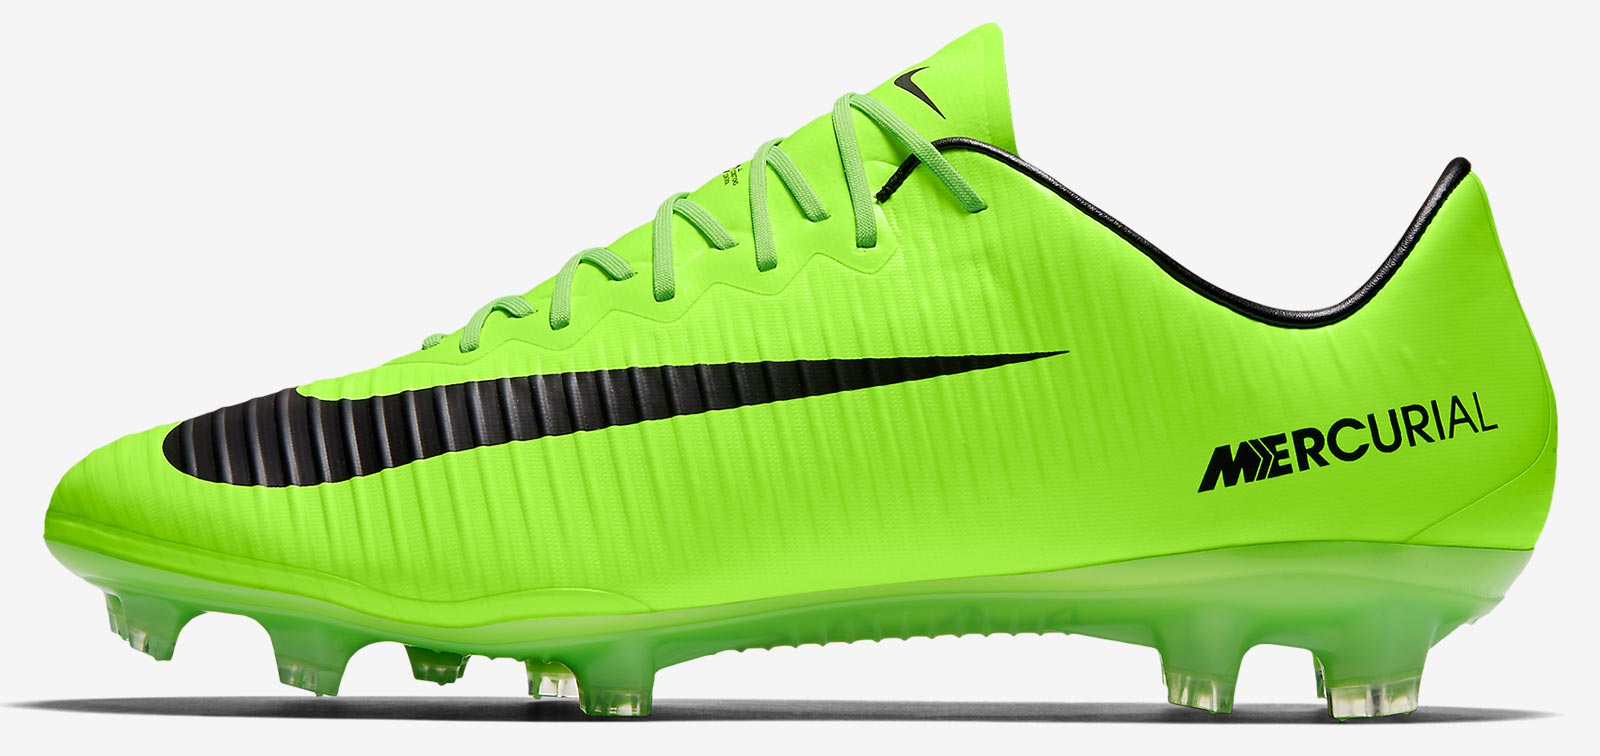 neymar green boots